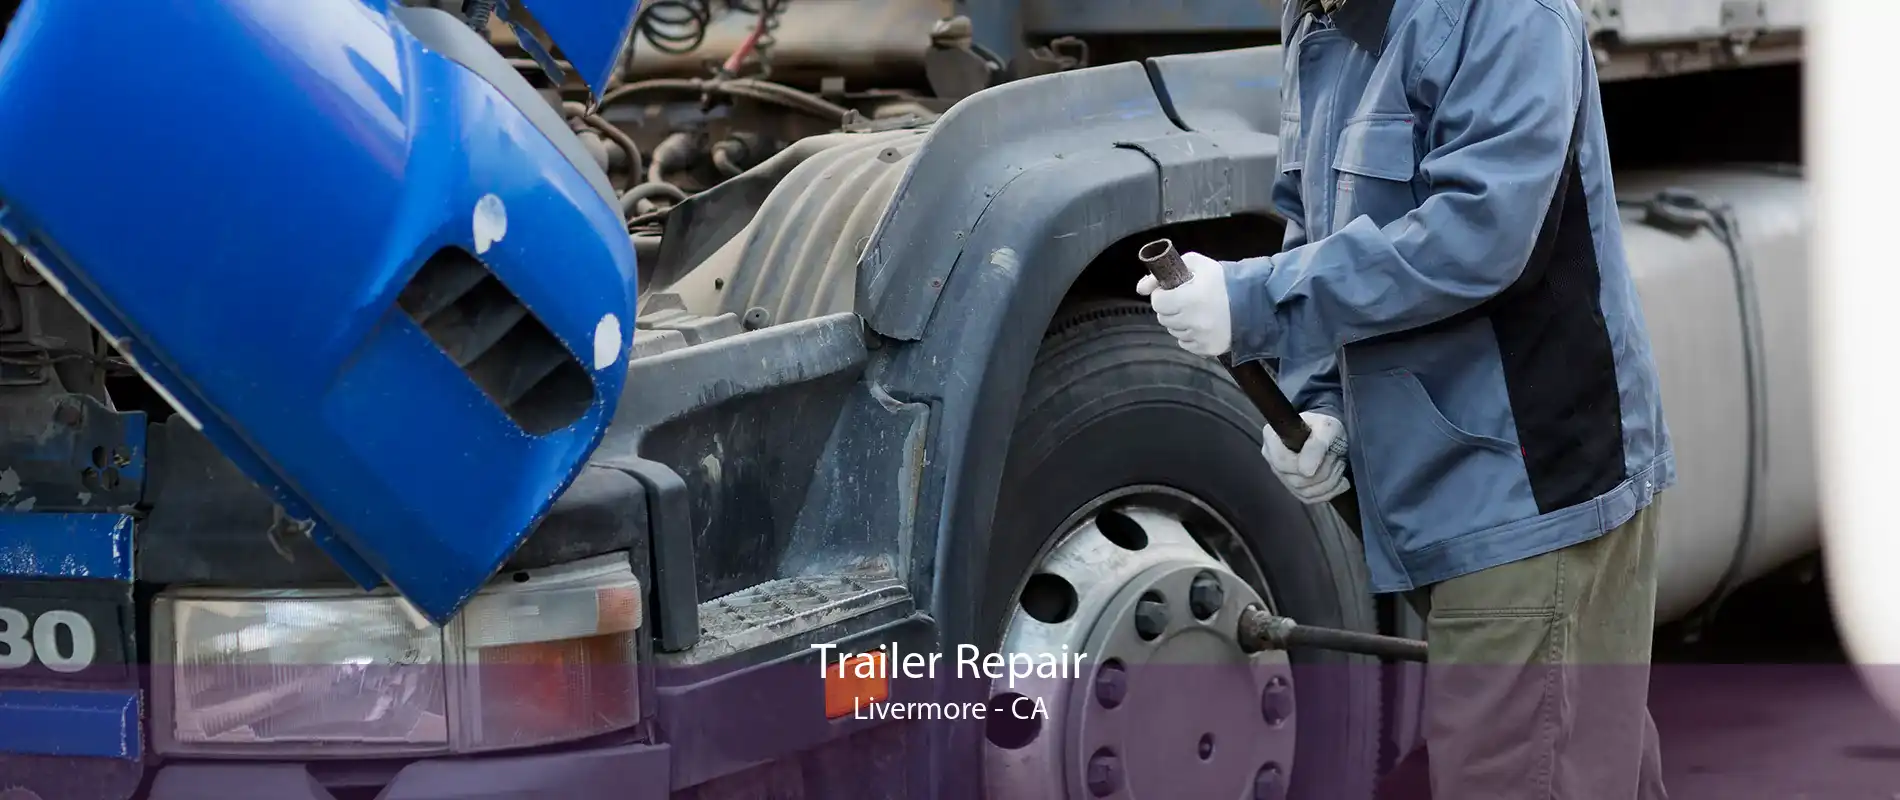 Trailer Repair Livermore - CA